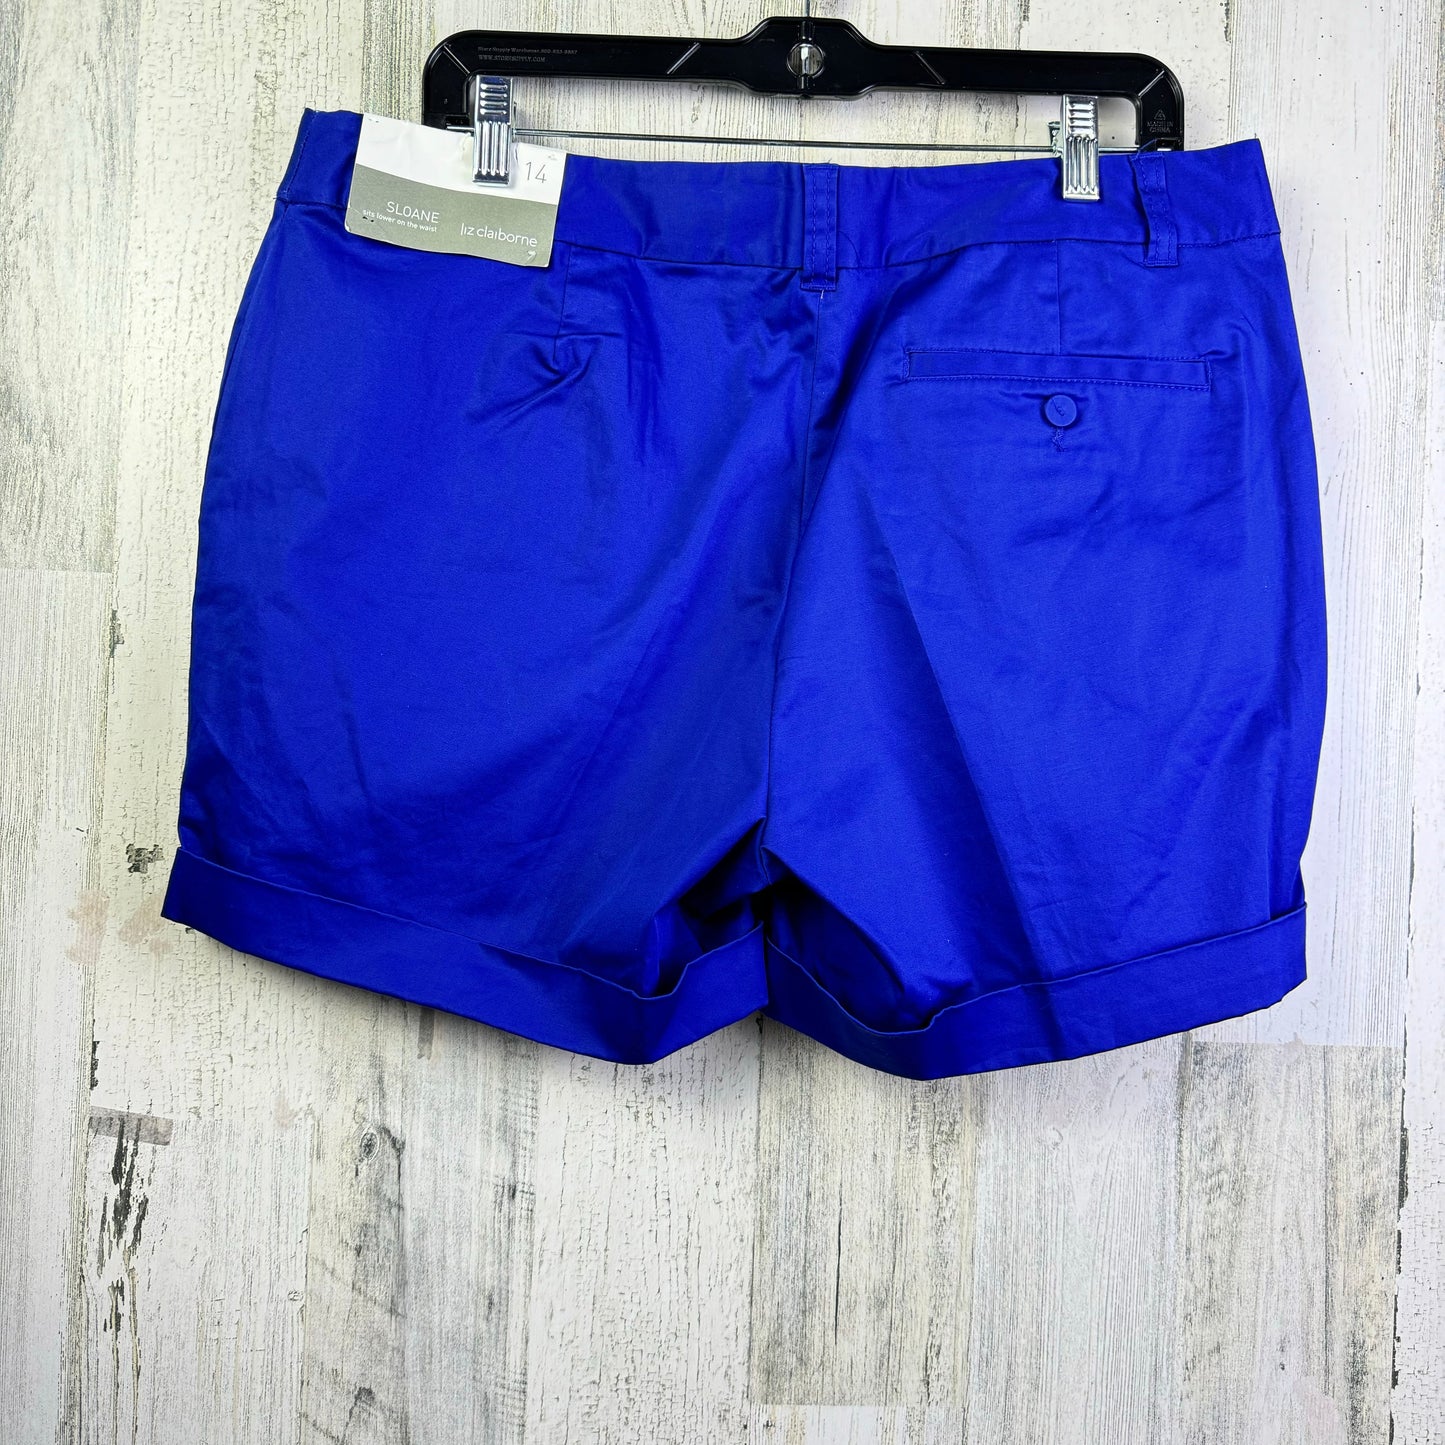 Blue Shorts Liz Claiborne, Size 14